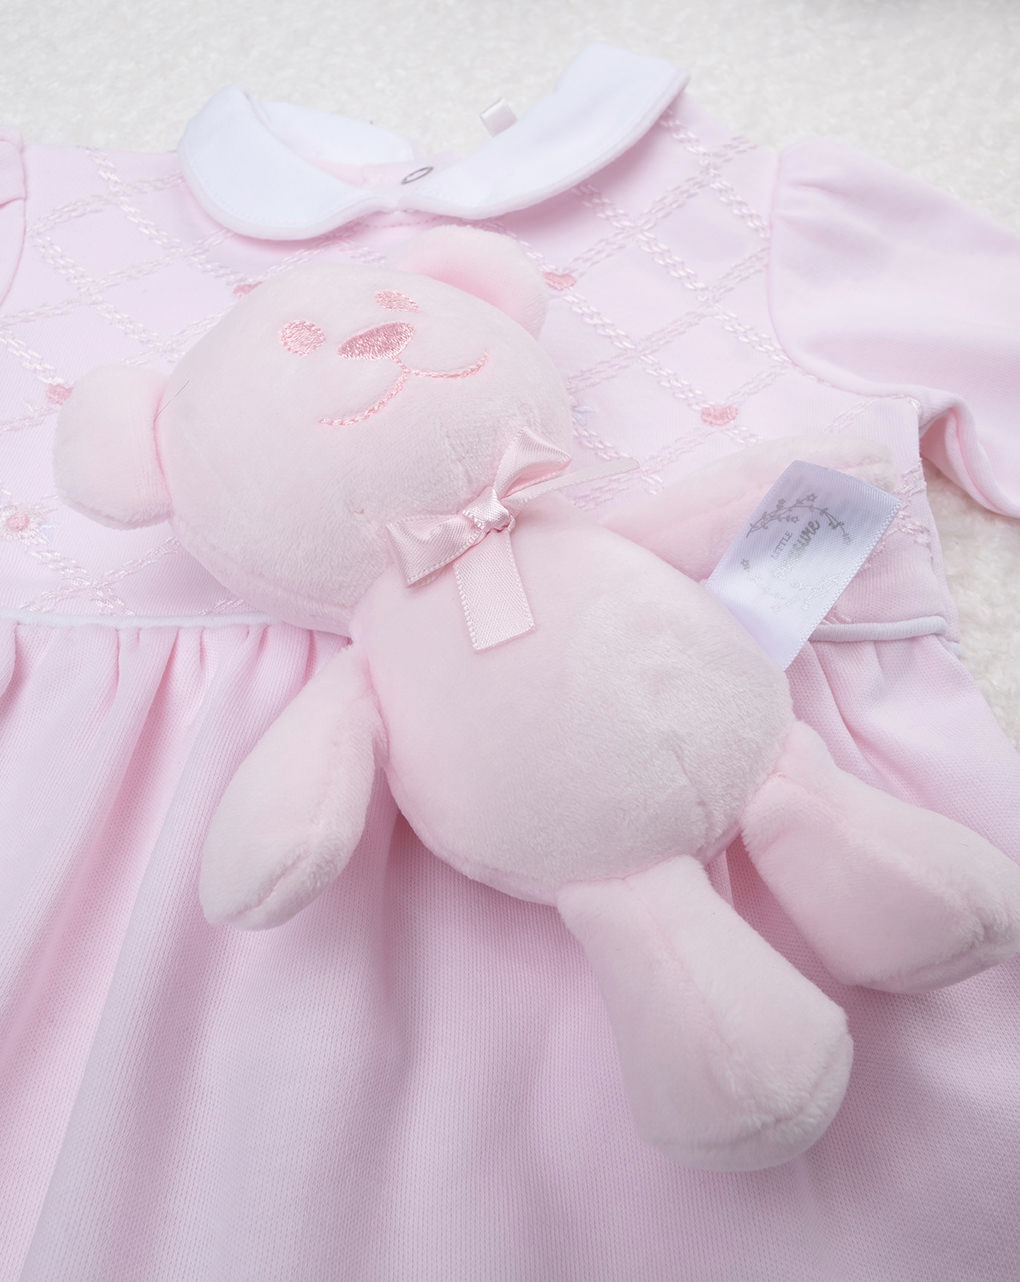 βρεφικό φορμάκι ροζ με καρδούλες gift για κορίτσι - Prénatal